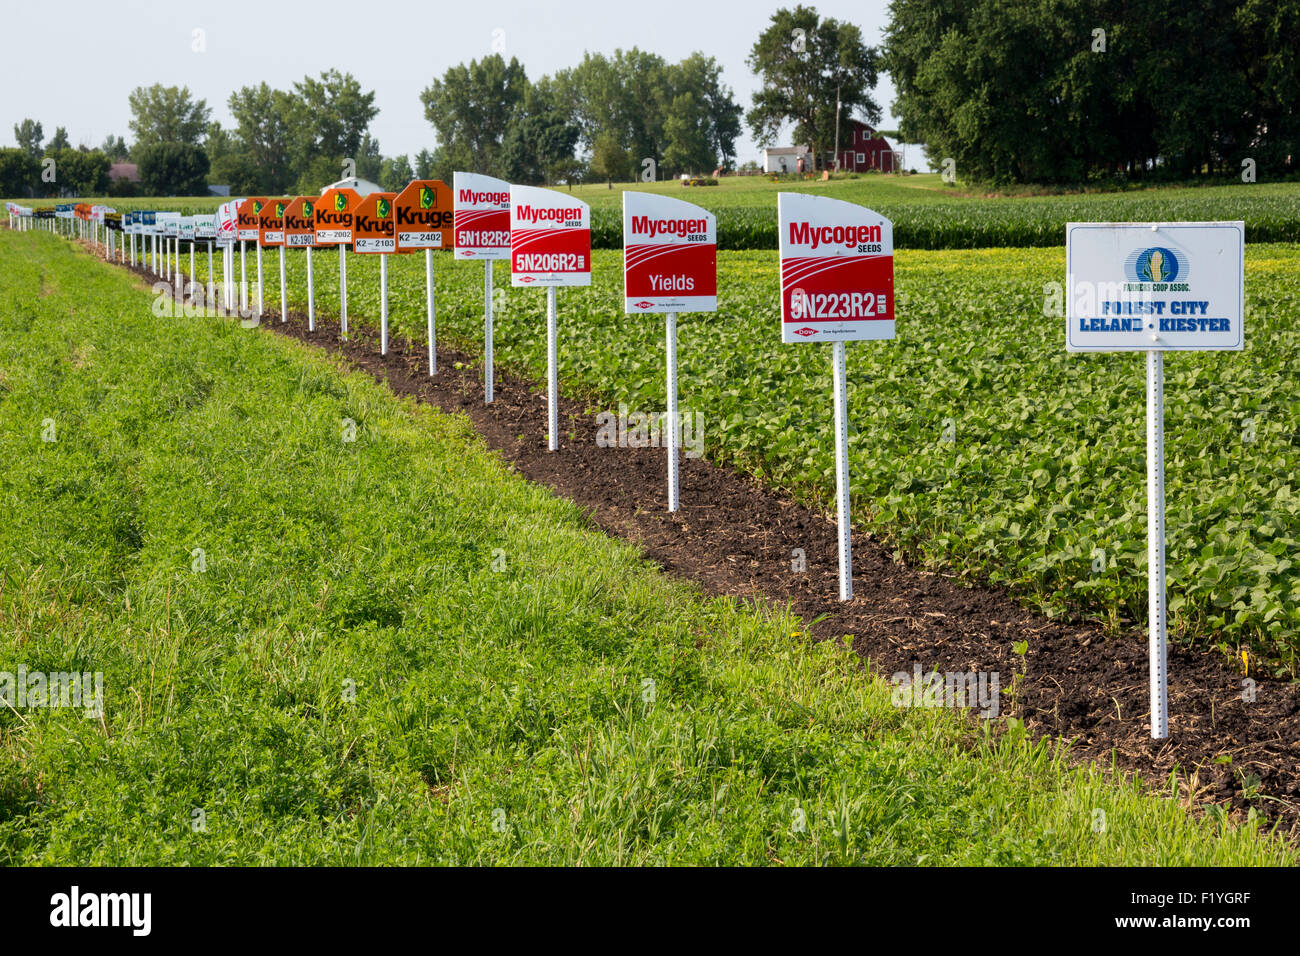 Forest City, Iowa - Signes marquer différentes variétés de cultures dans un champ de soja, y compris les cultures génétiquement modifiées. Banque D'Images